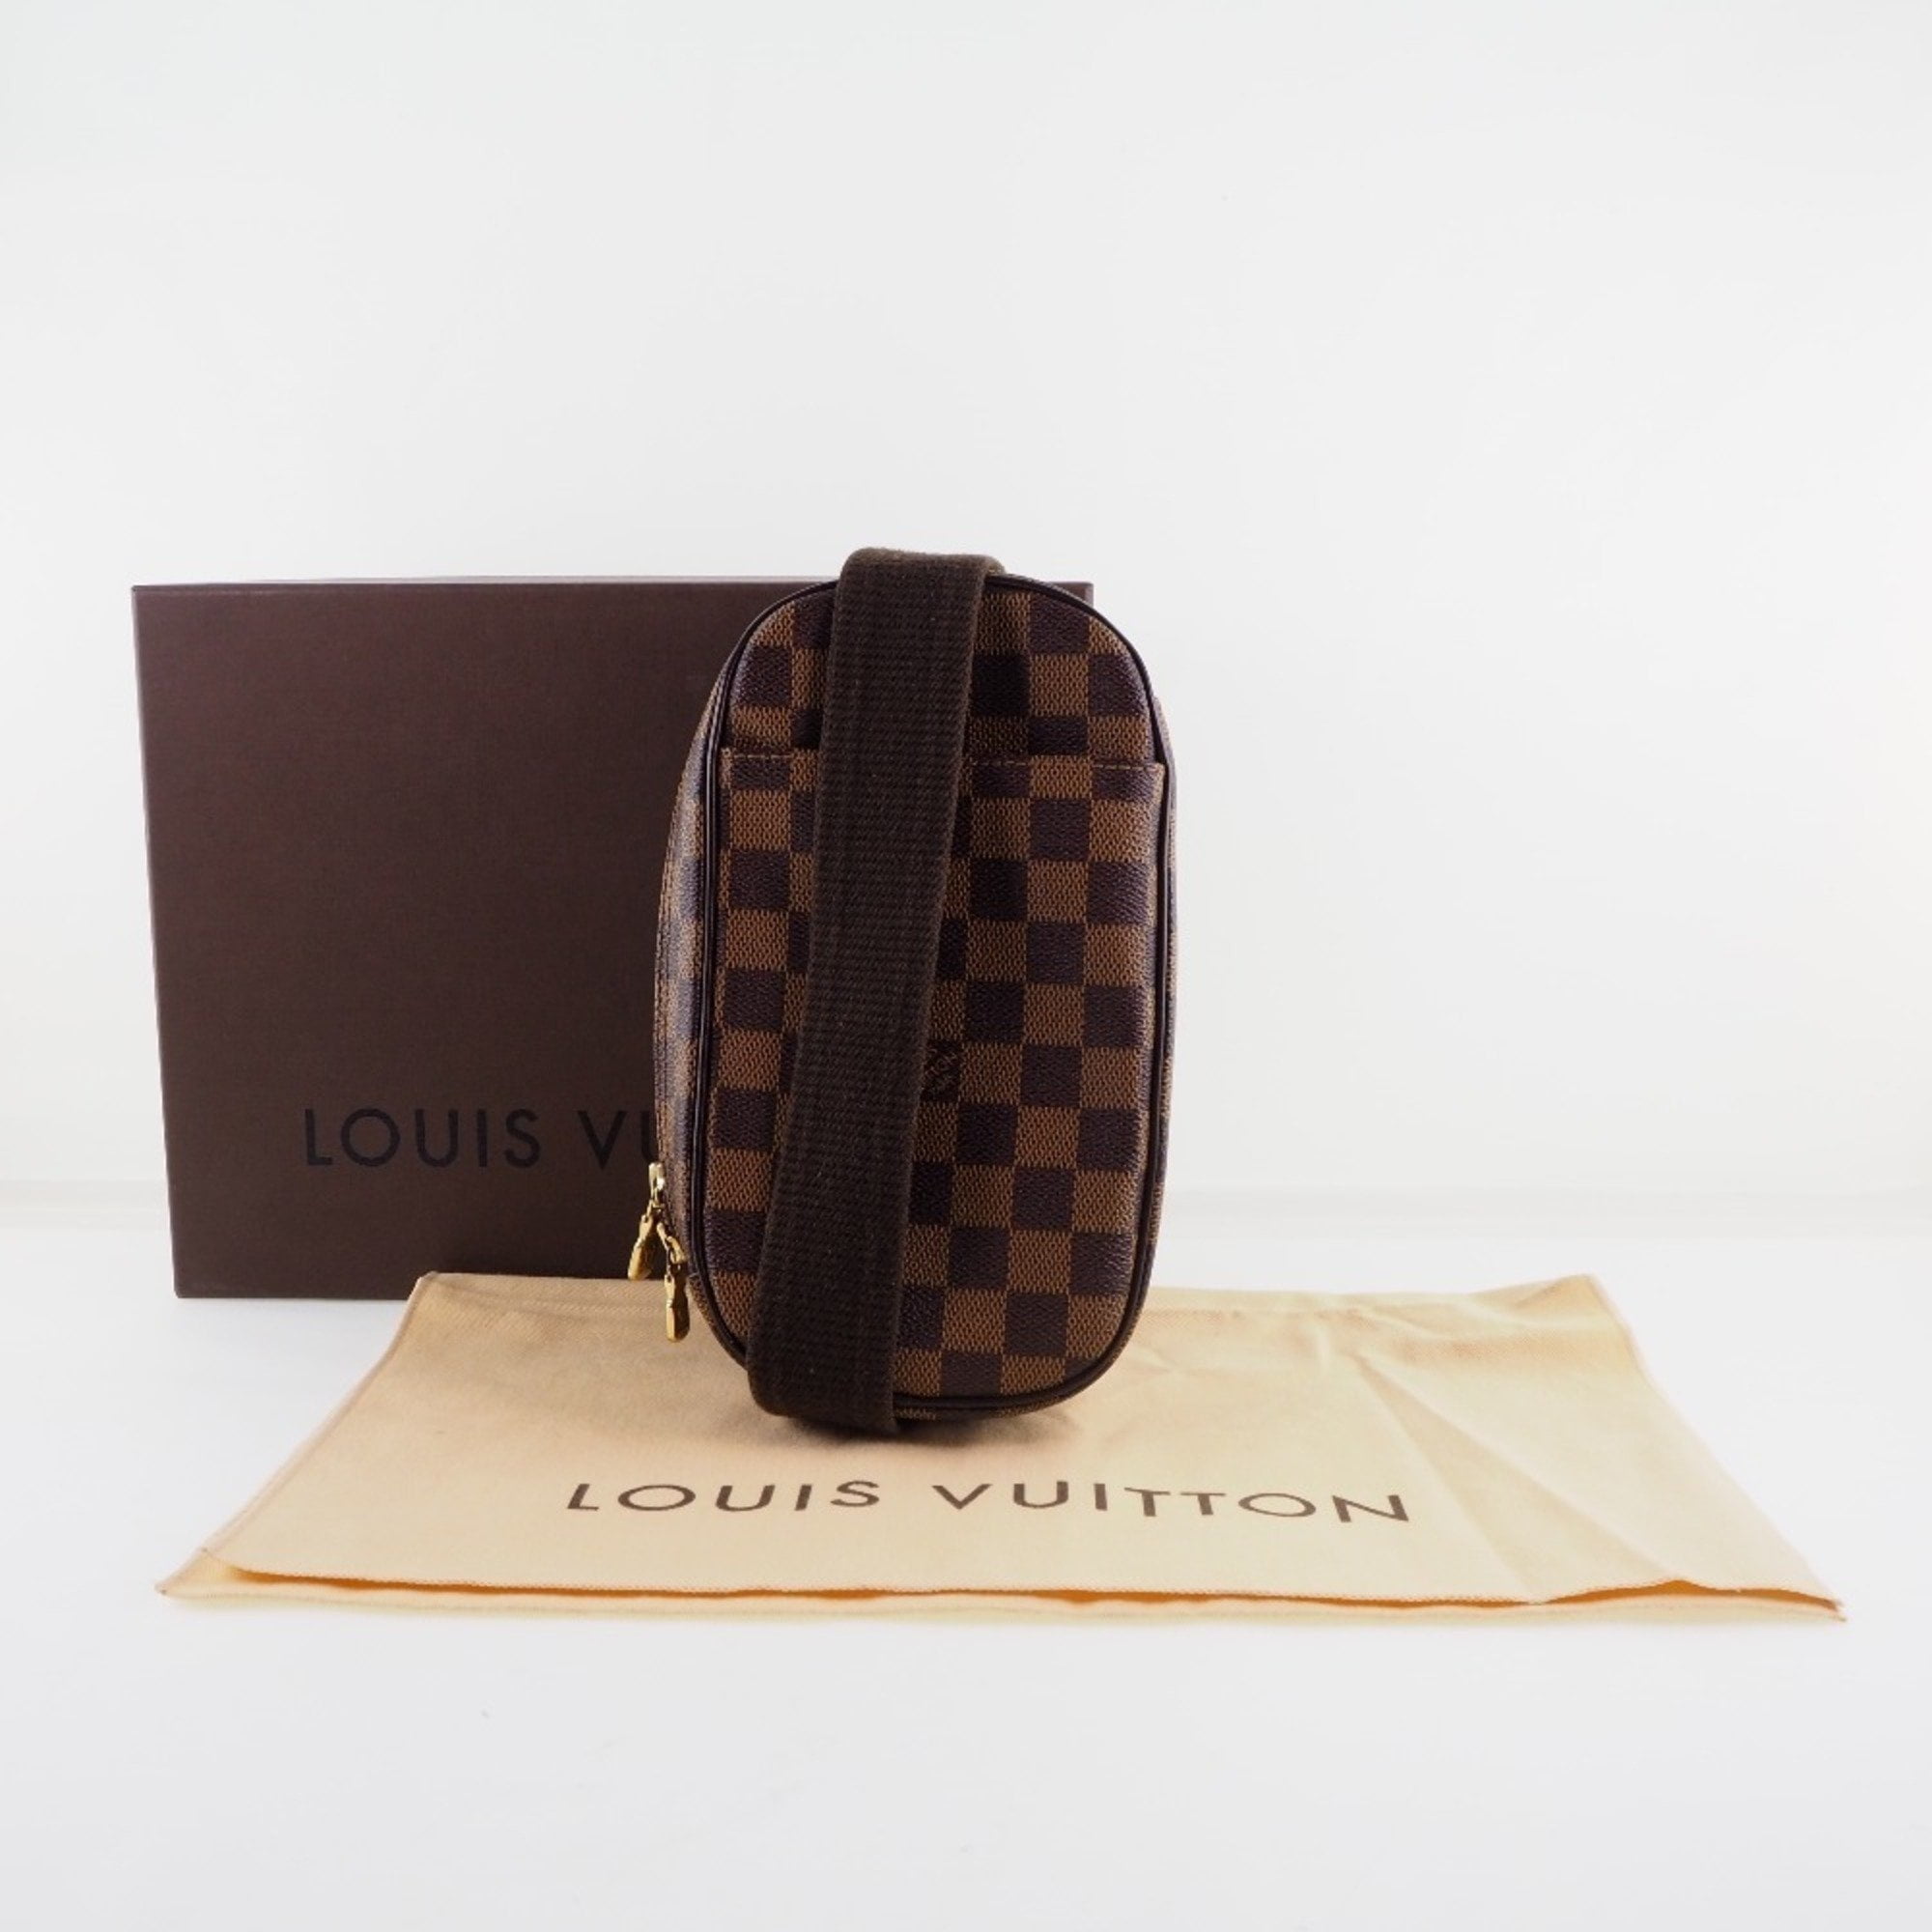 LOUIS VUITTON LOUIS VUITTON Griet Handbag N48108 Damier Ebene Canvas  Leather Used Women N48108